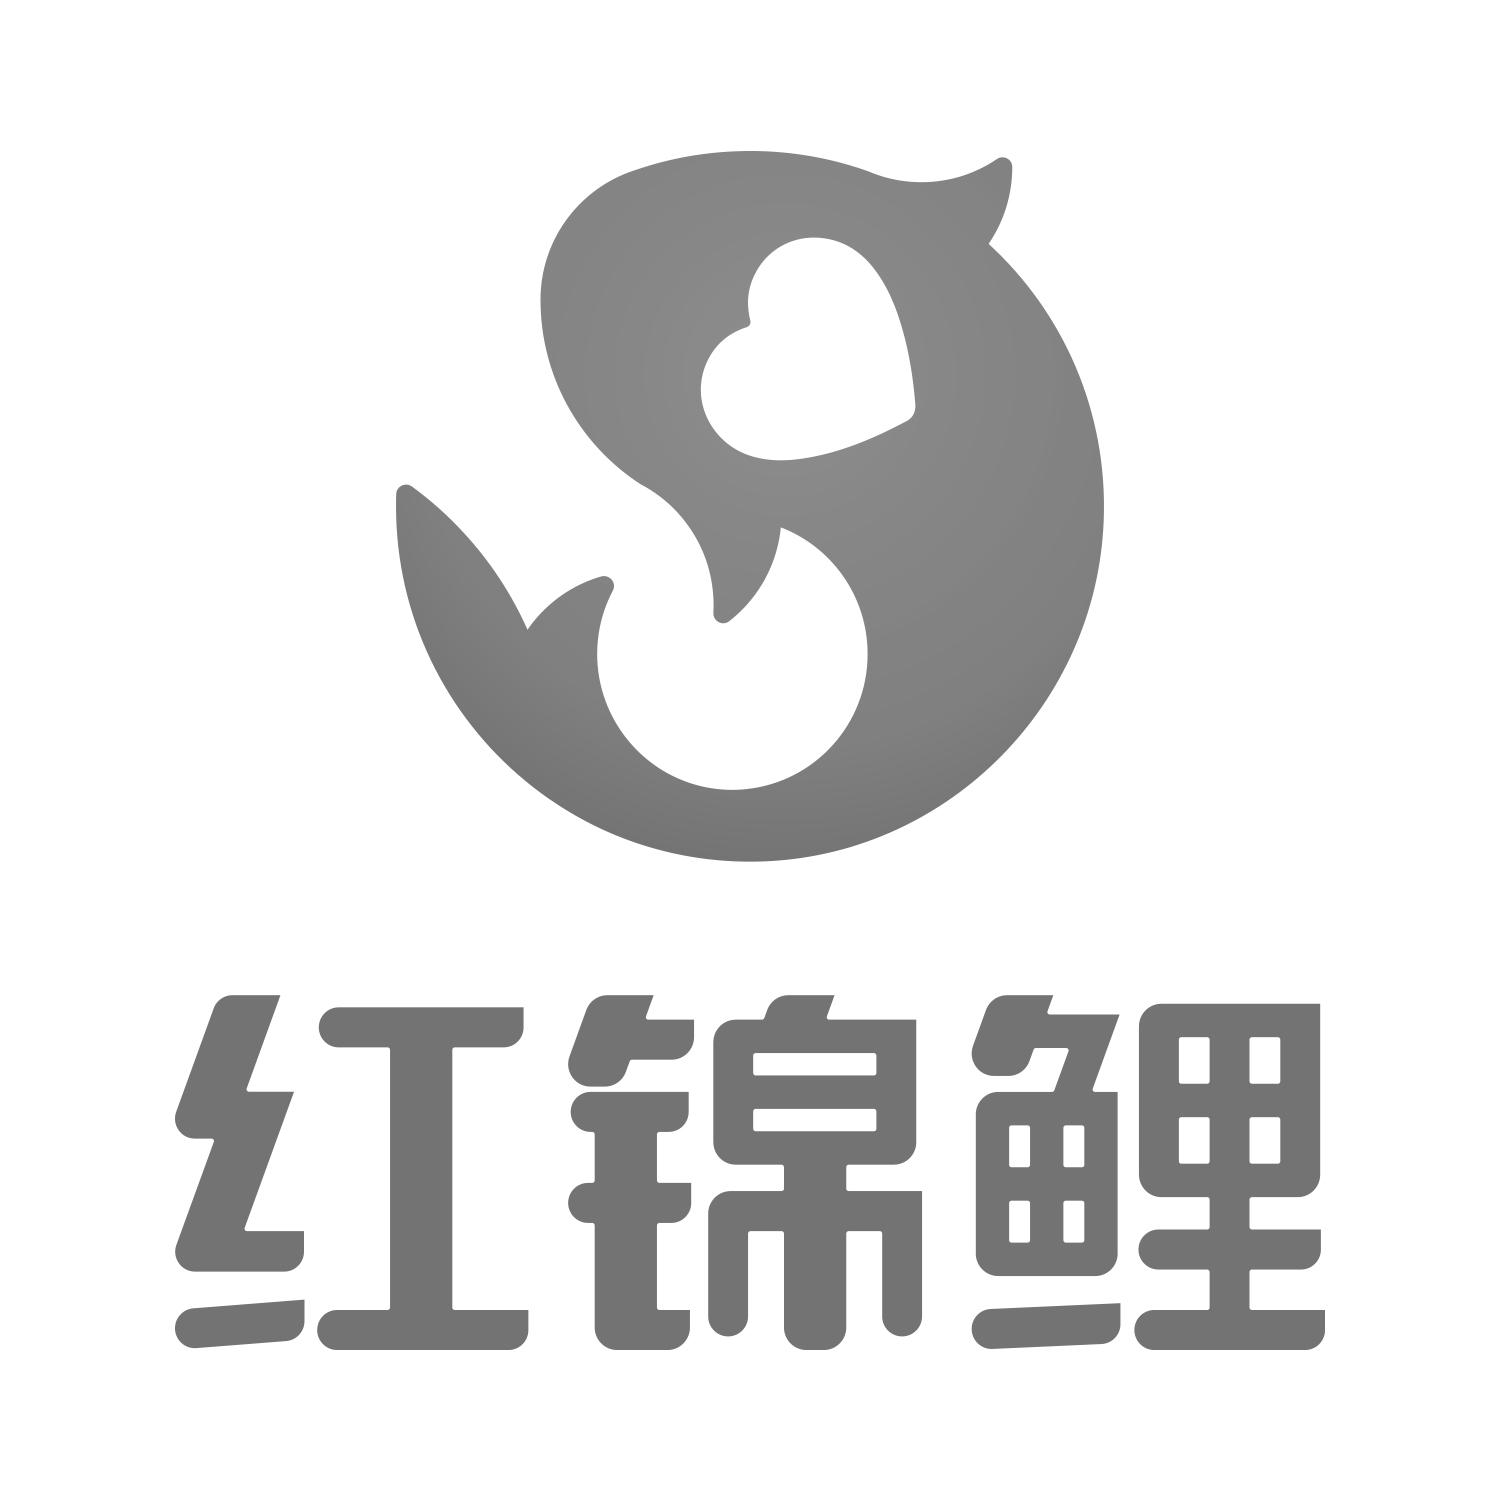 锦鲤logo图标大全图片